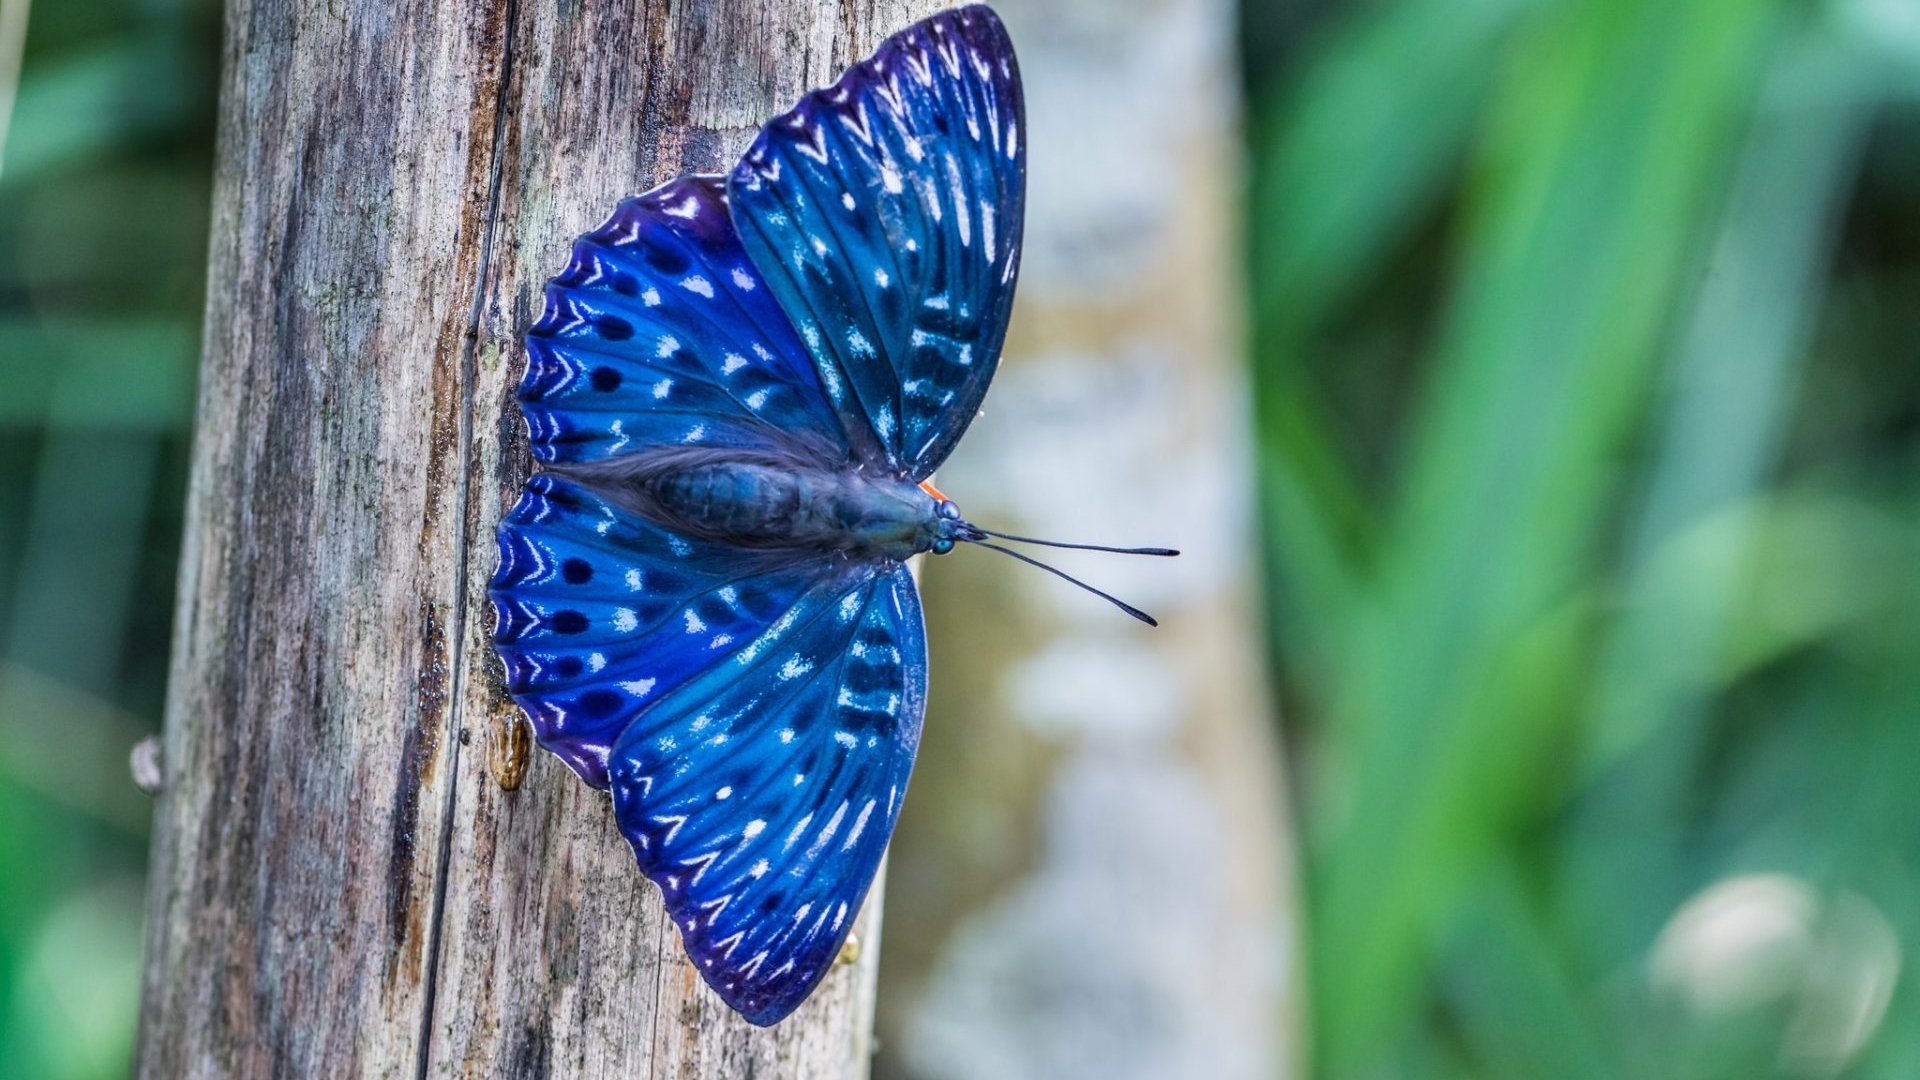 Картинка: Бабочка, синяя, крылья, окрас, дерево, красивая